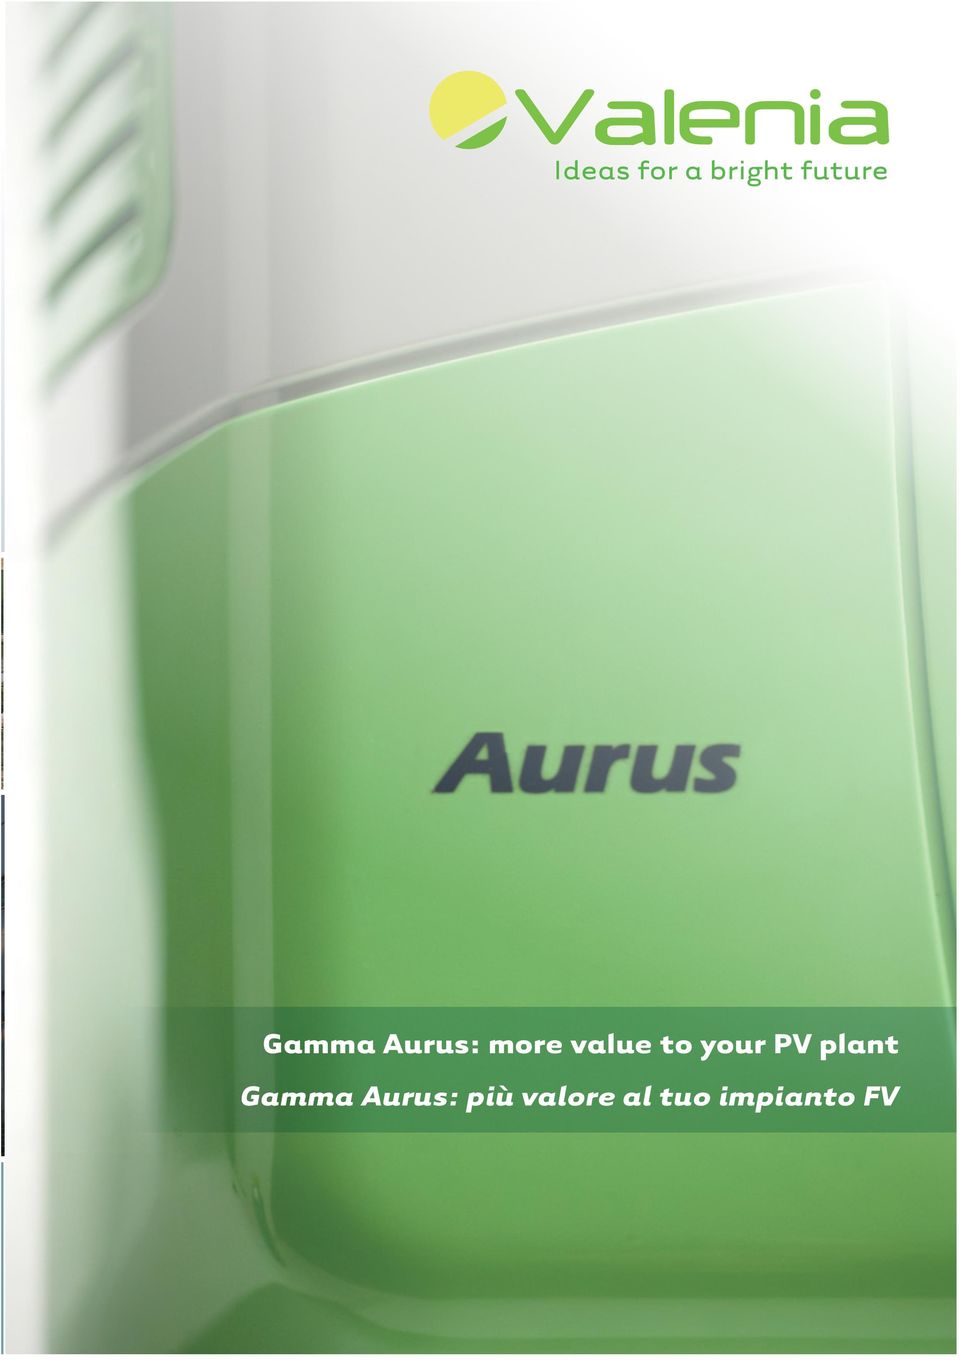 plant Gamma Aurus: